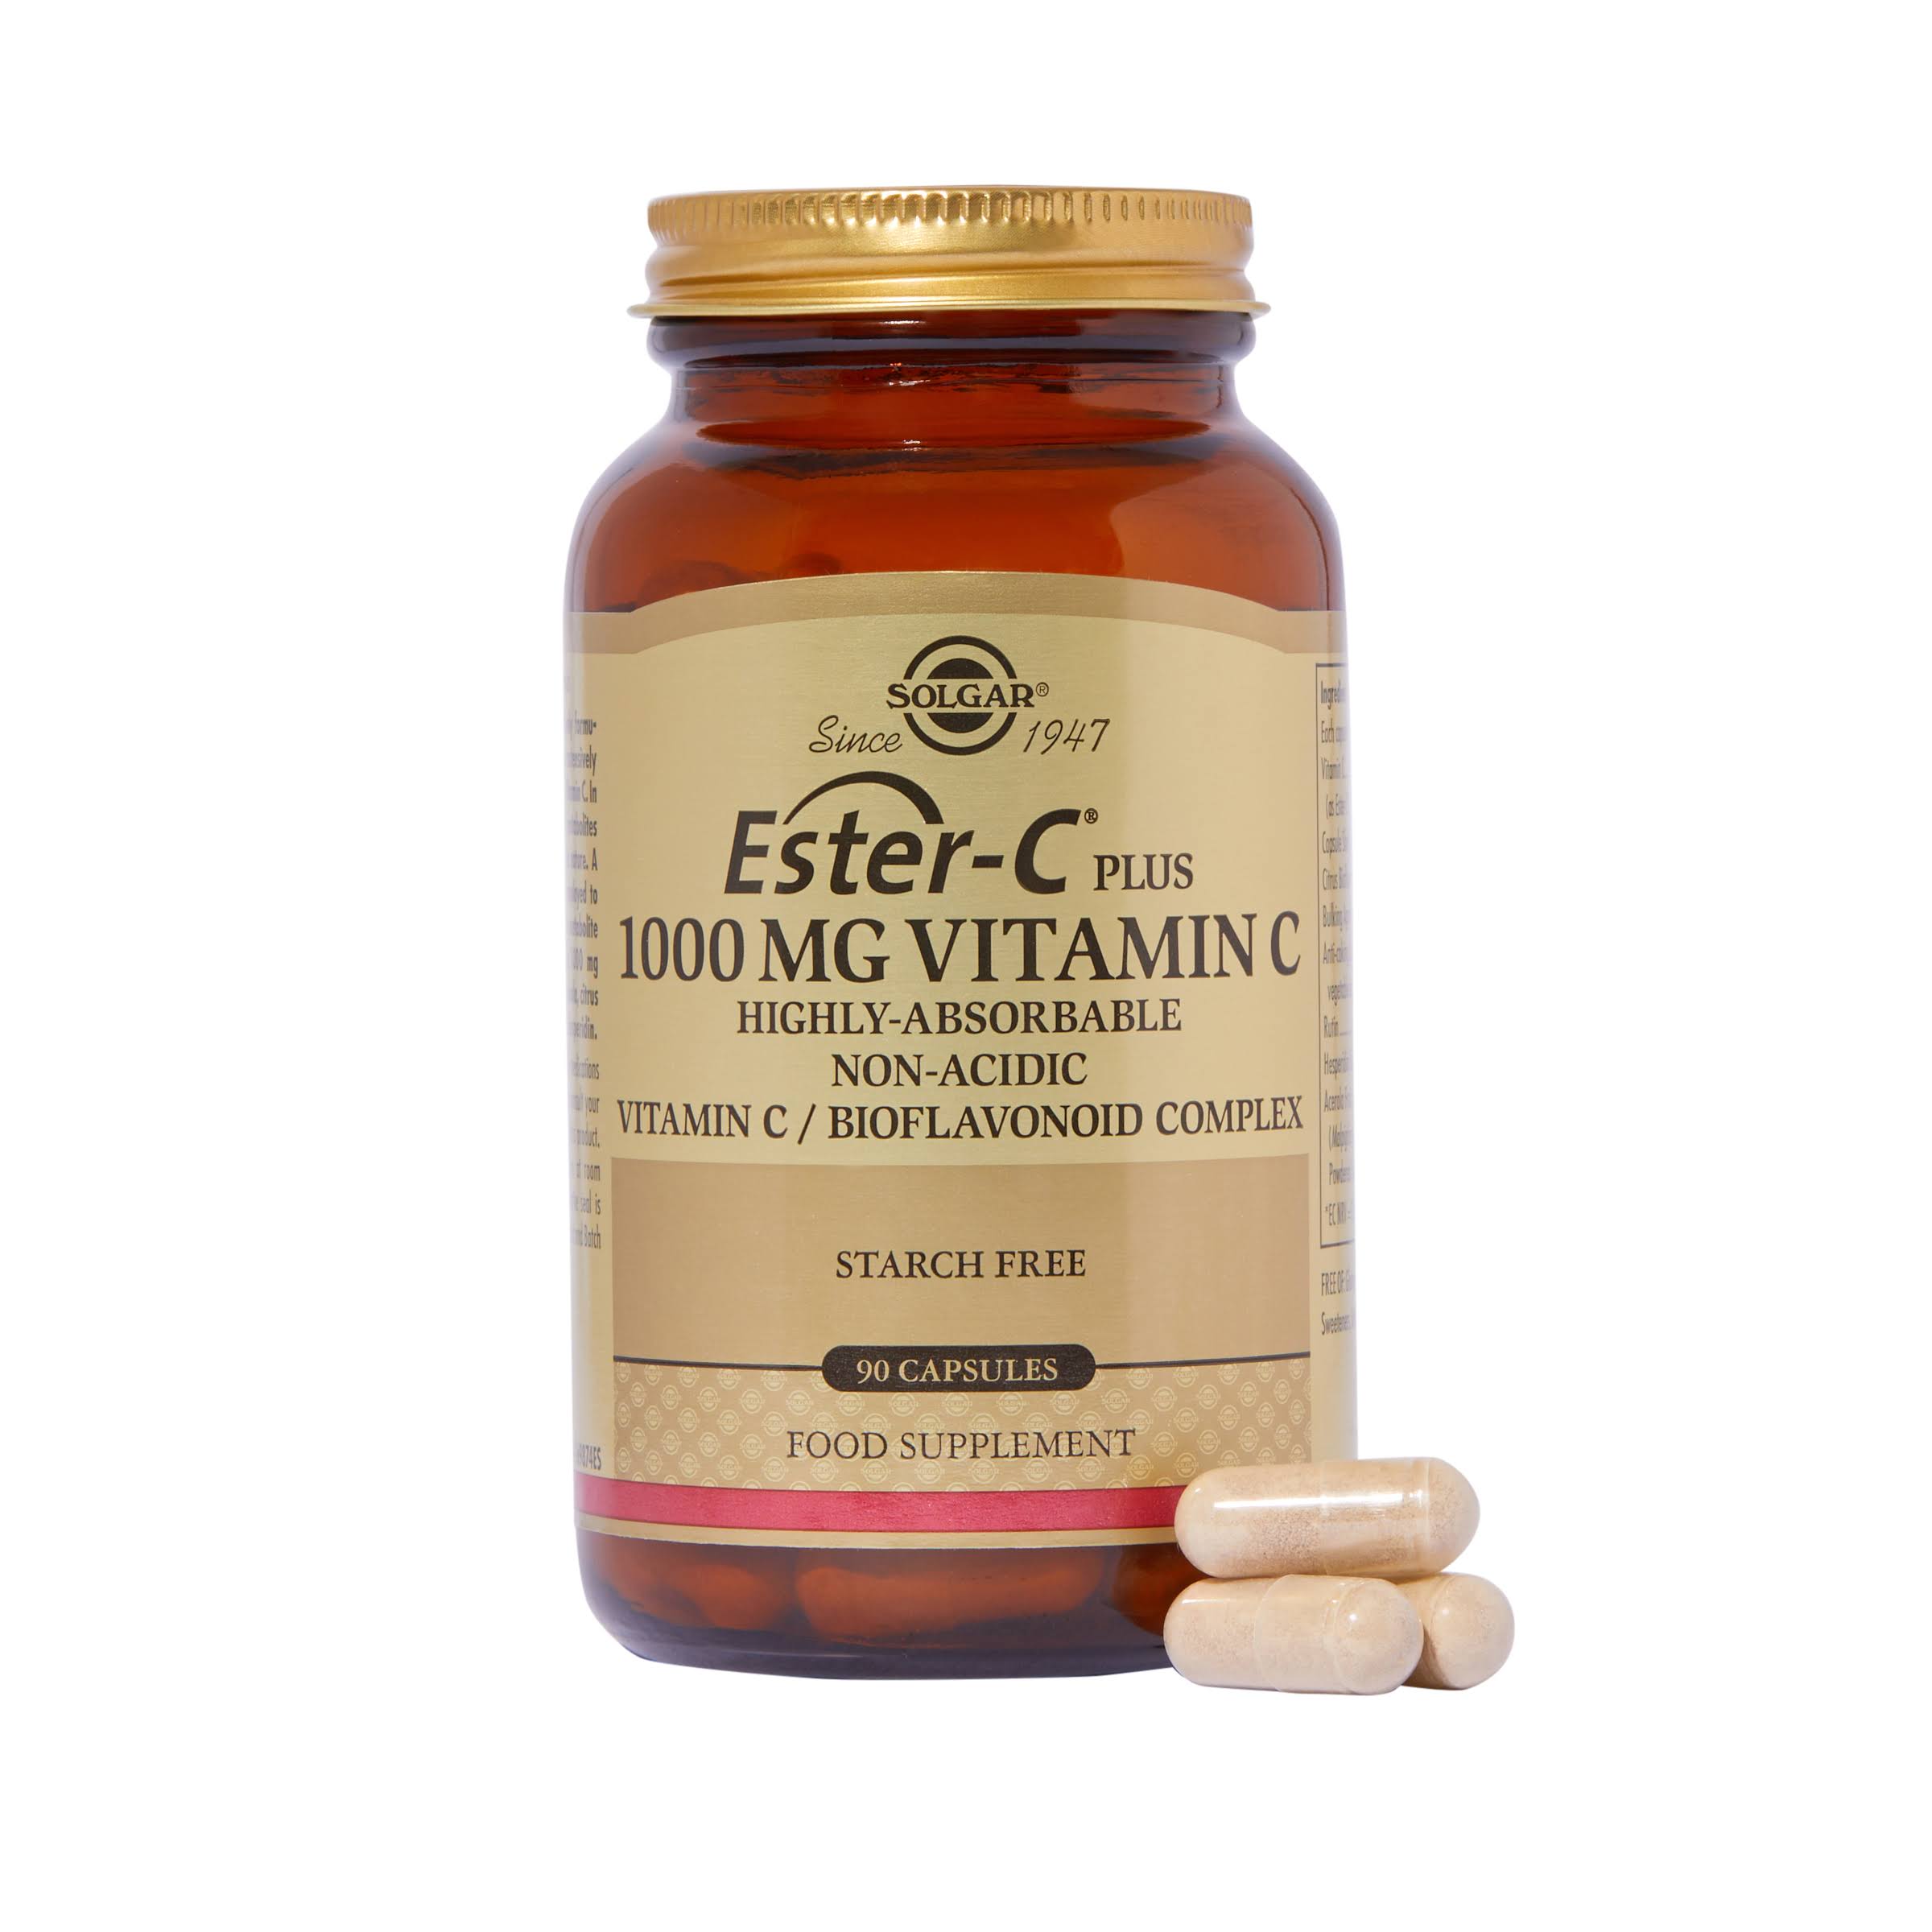 Solgar Ester-C Vitamin C - 90 Capsules